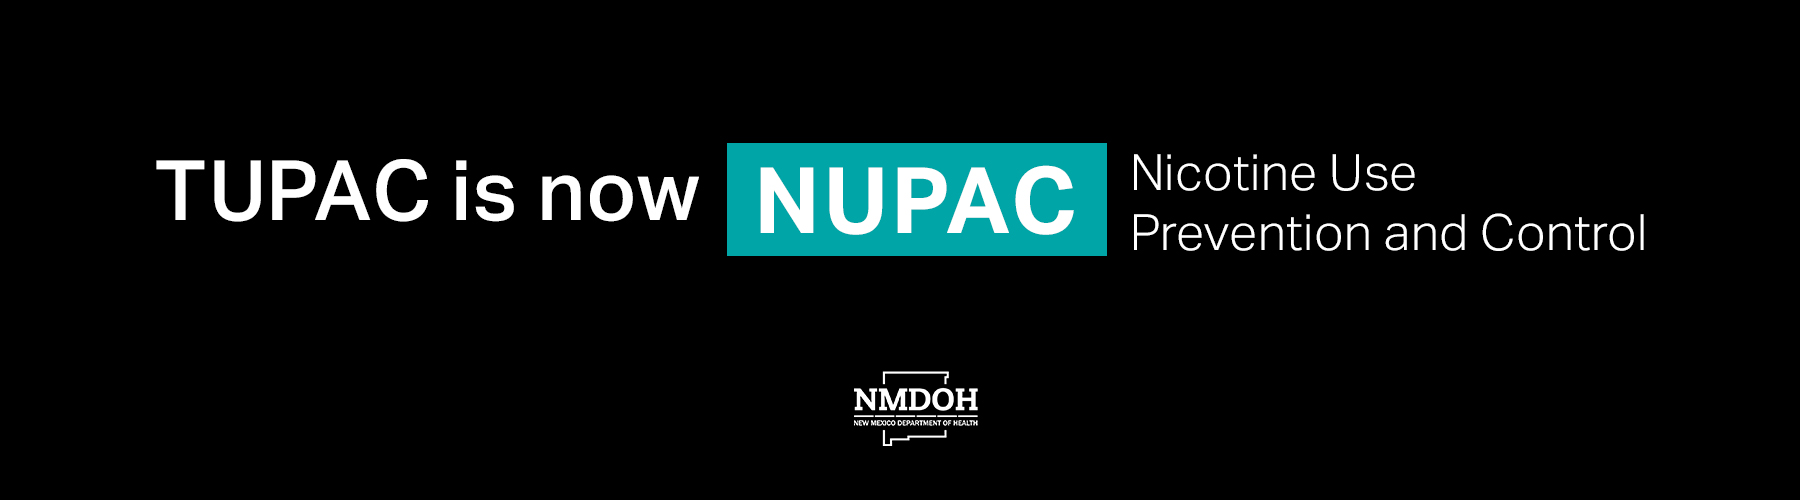 TUPAC is now NUPAC slide